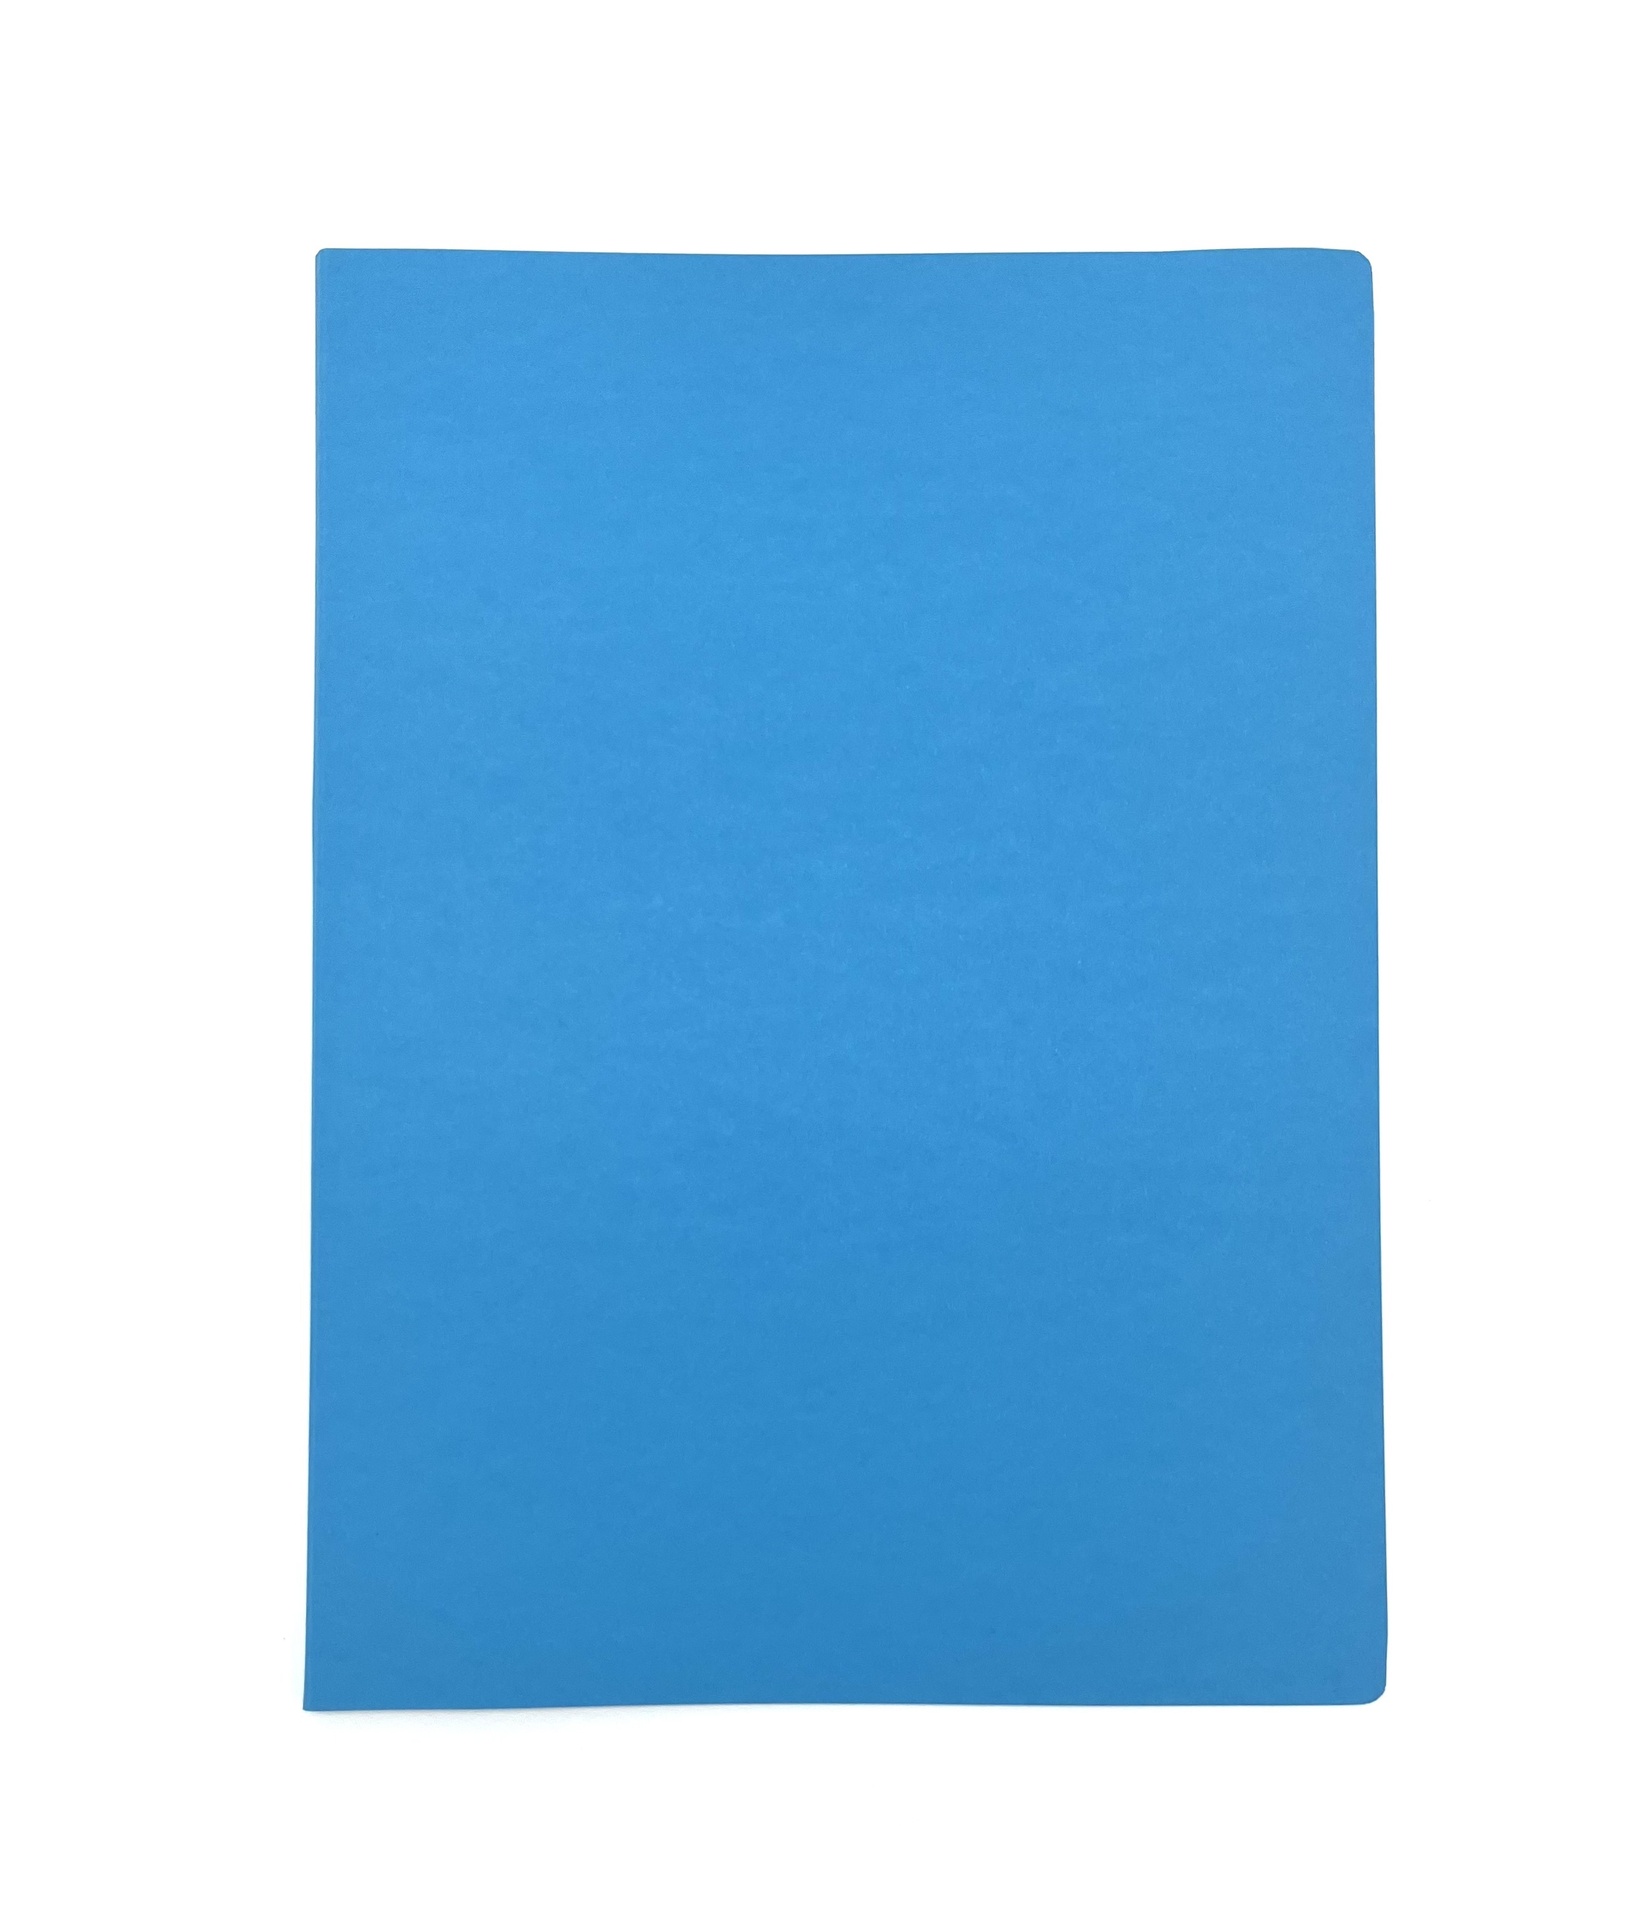 [EECEV001] Kartongmapp blå jungfruben & vit skena 10st/fp